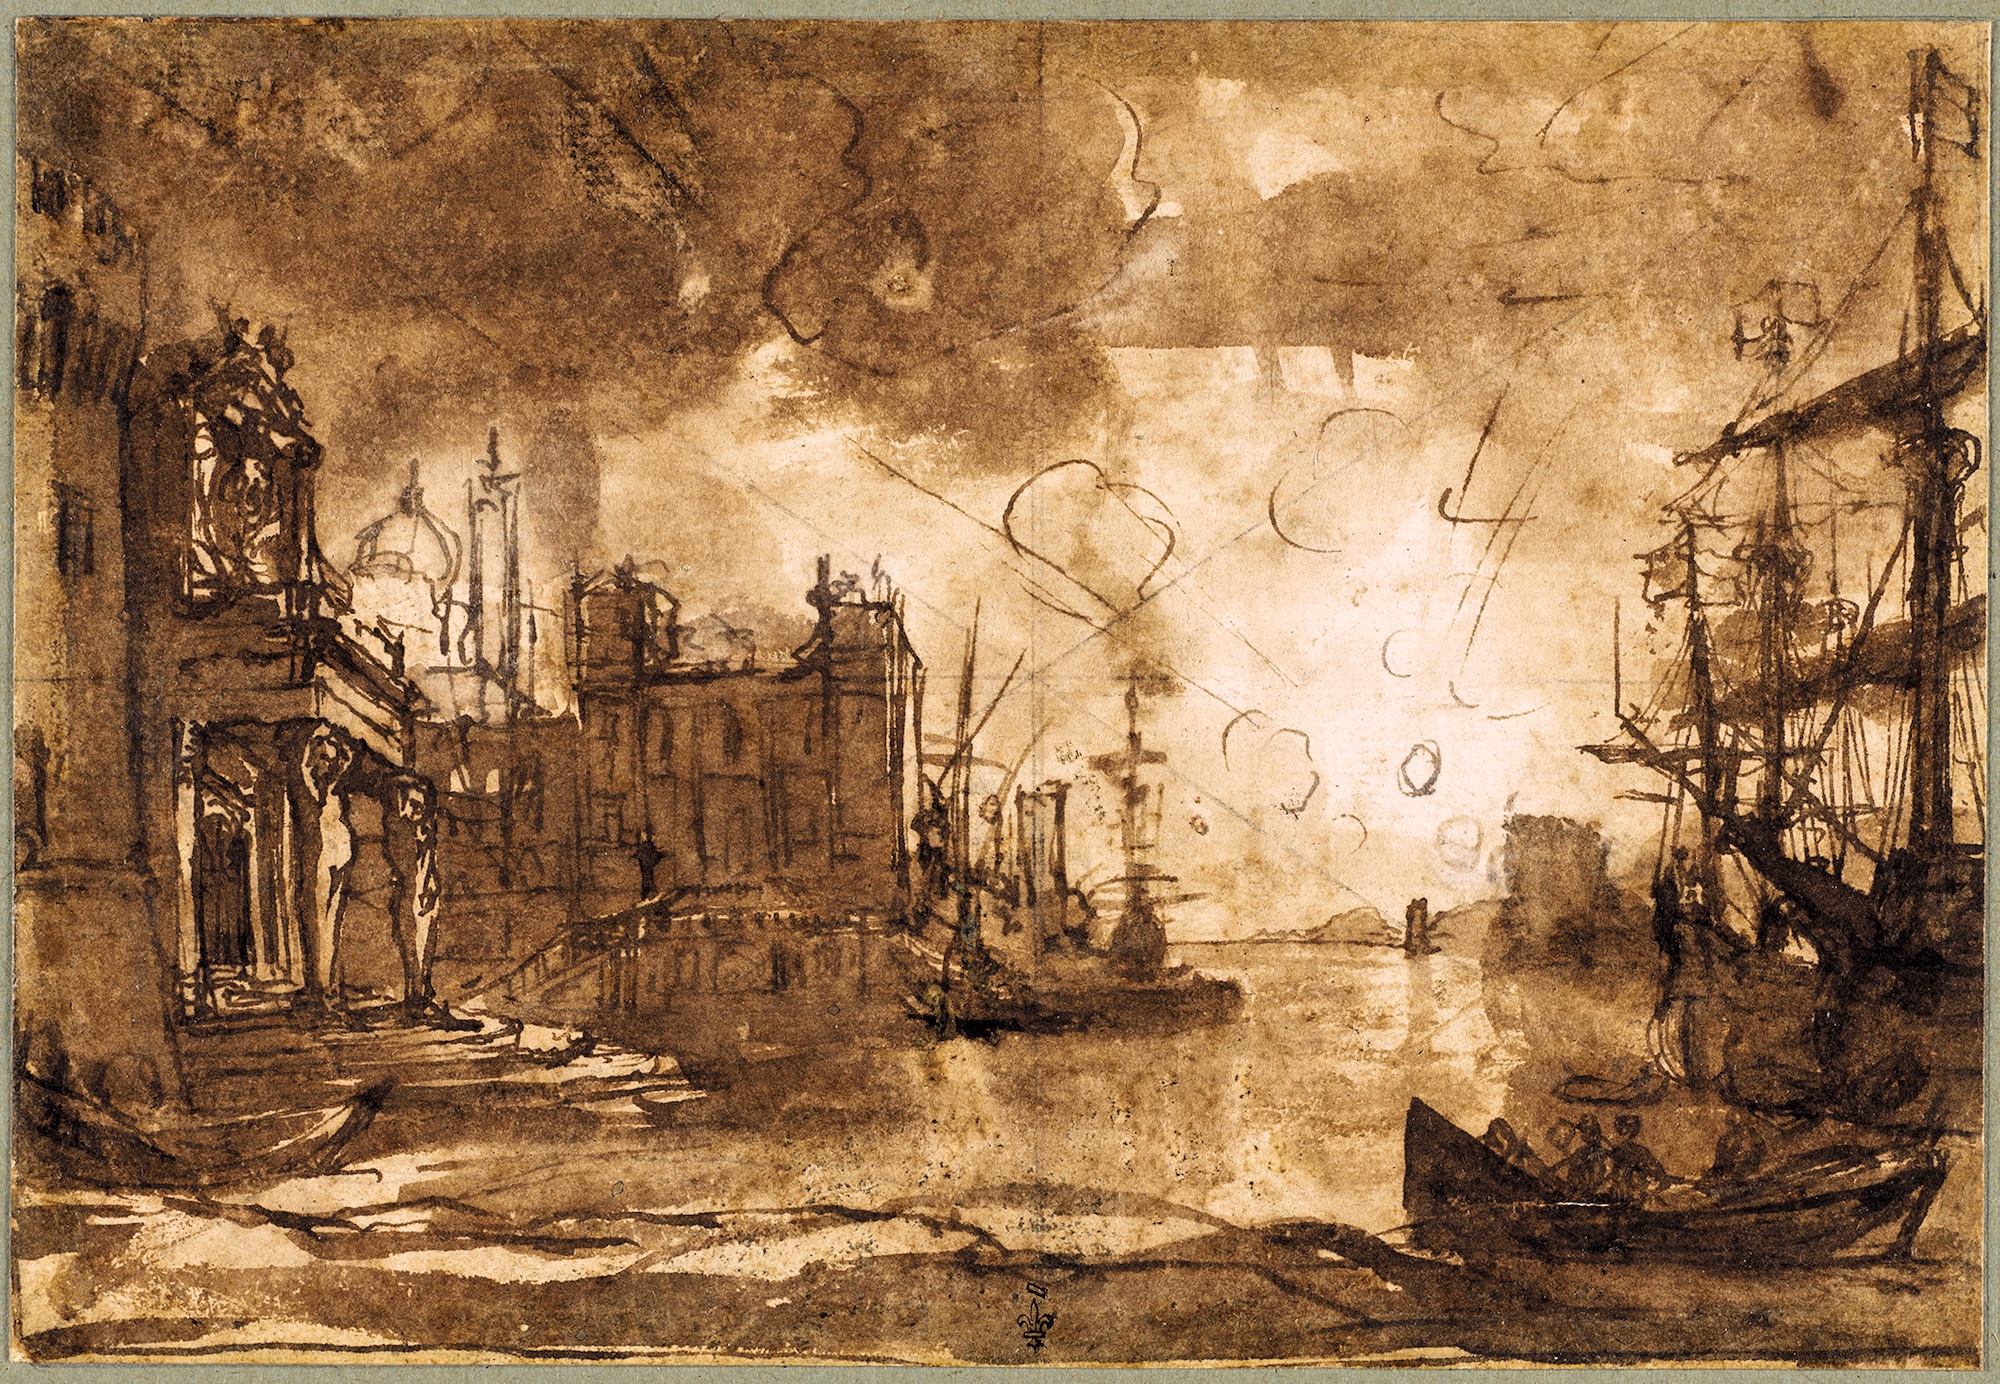 Claude Gellée, dit Le Lorrain (vers 1600-1682), Port de mer au soleil couchant, vers 1635-1640. Plume et encre brune, lavis brun, légers rehauts blancs, mise au carreau diagonale à la pierre noire sur papier vergé (doublé), 13,9 x 20,3 cm. Chantilly, musée Condé. Photo service de presse. © RMN-Grand Palais / Domaine de Chantilly / Adrien Didierjean